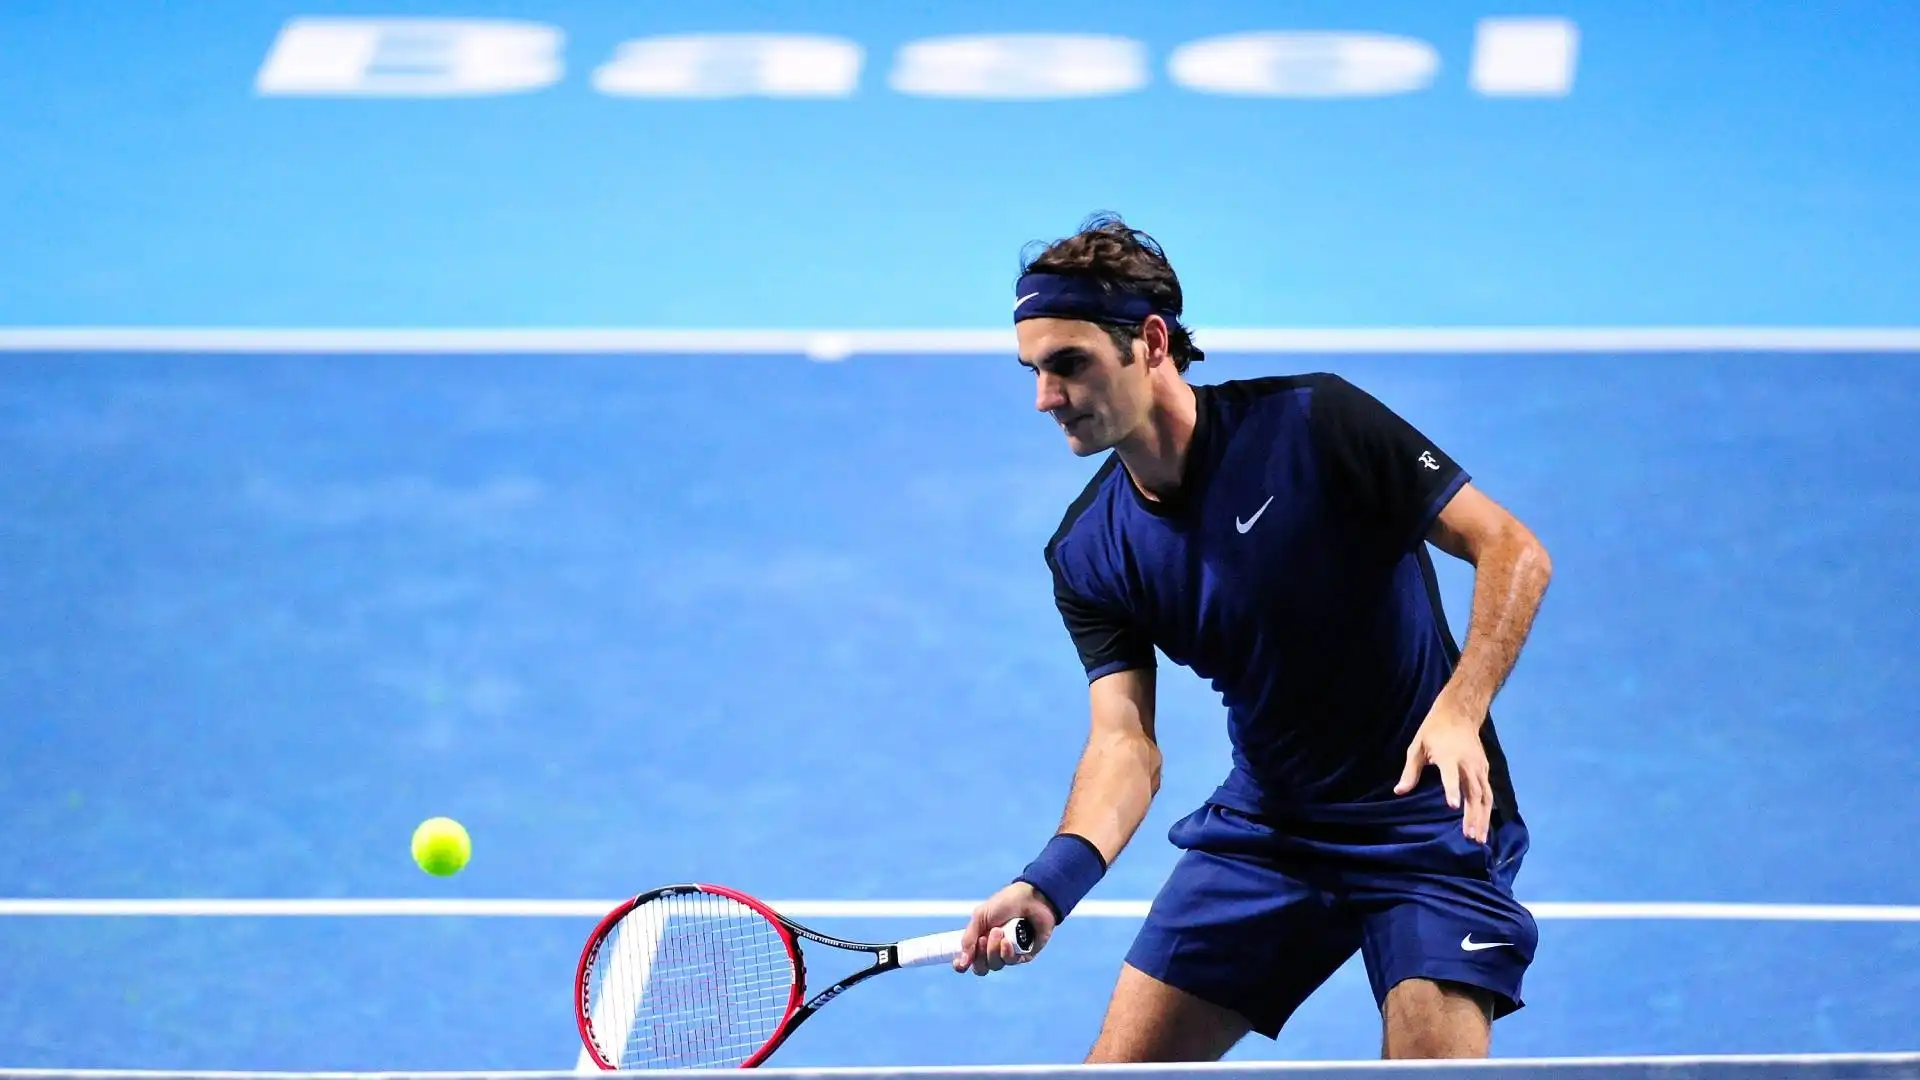 Il rientro ufficiale in un torneo ATP dovrebbe avvenire nella sua amata Basilea, in cui Federer ha trionfato per ben 10 volte